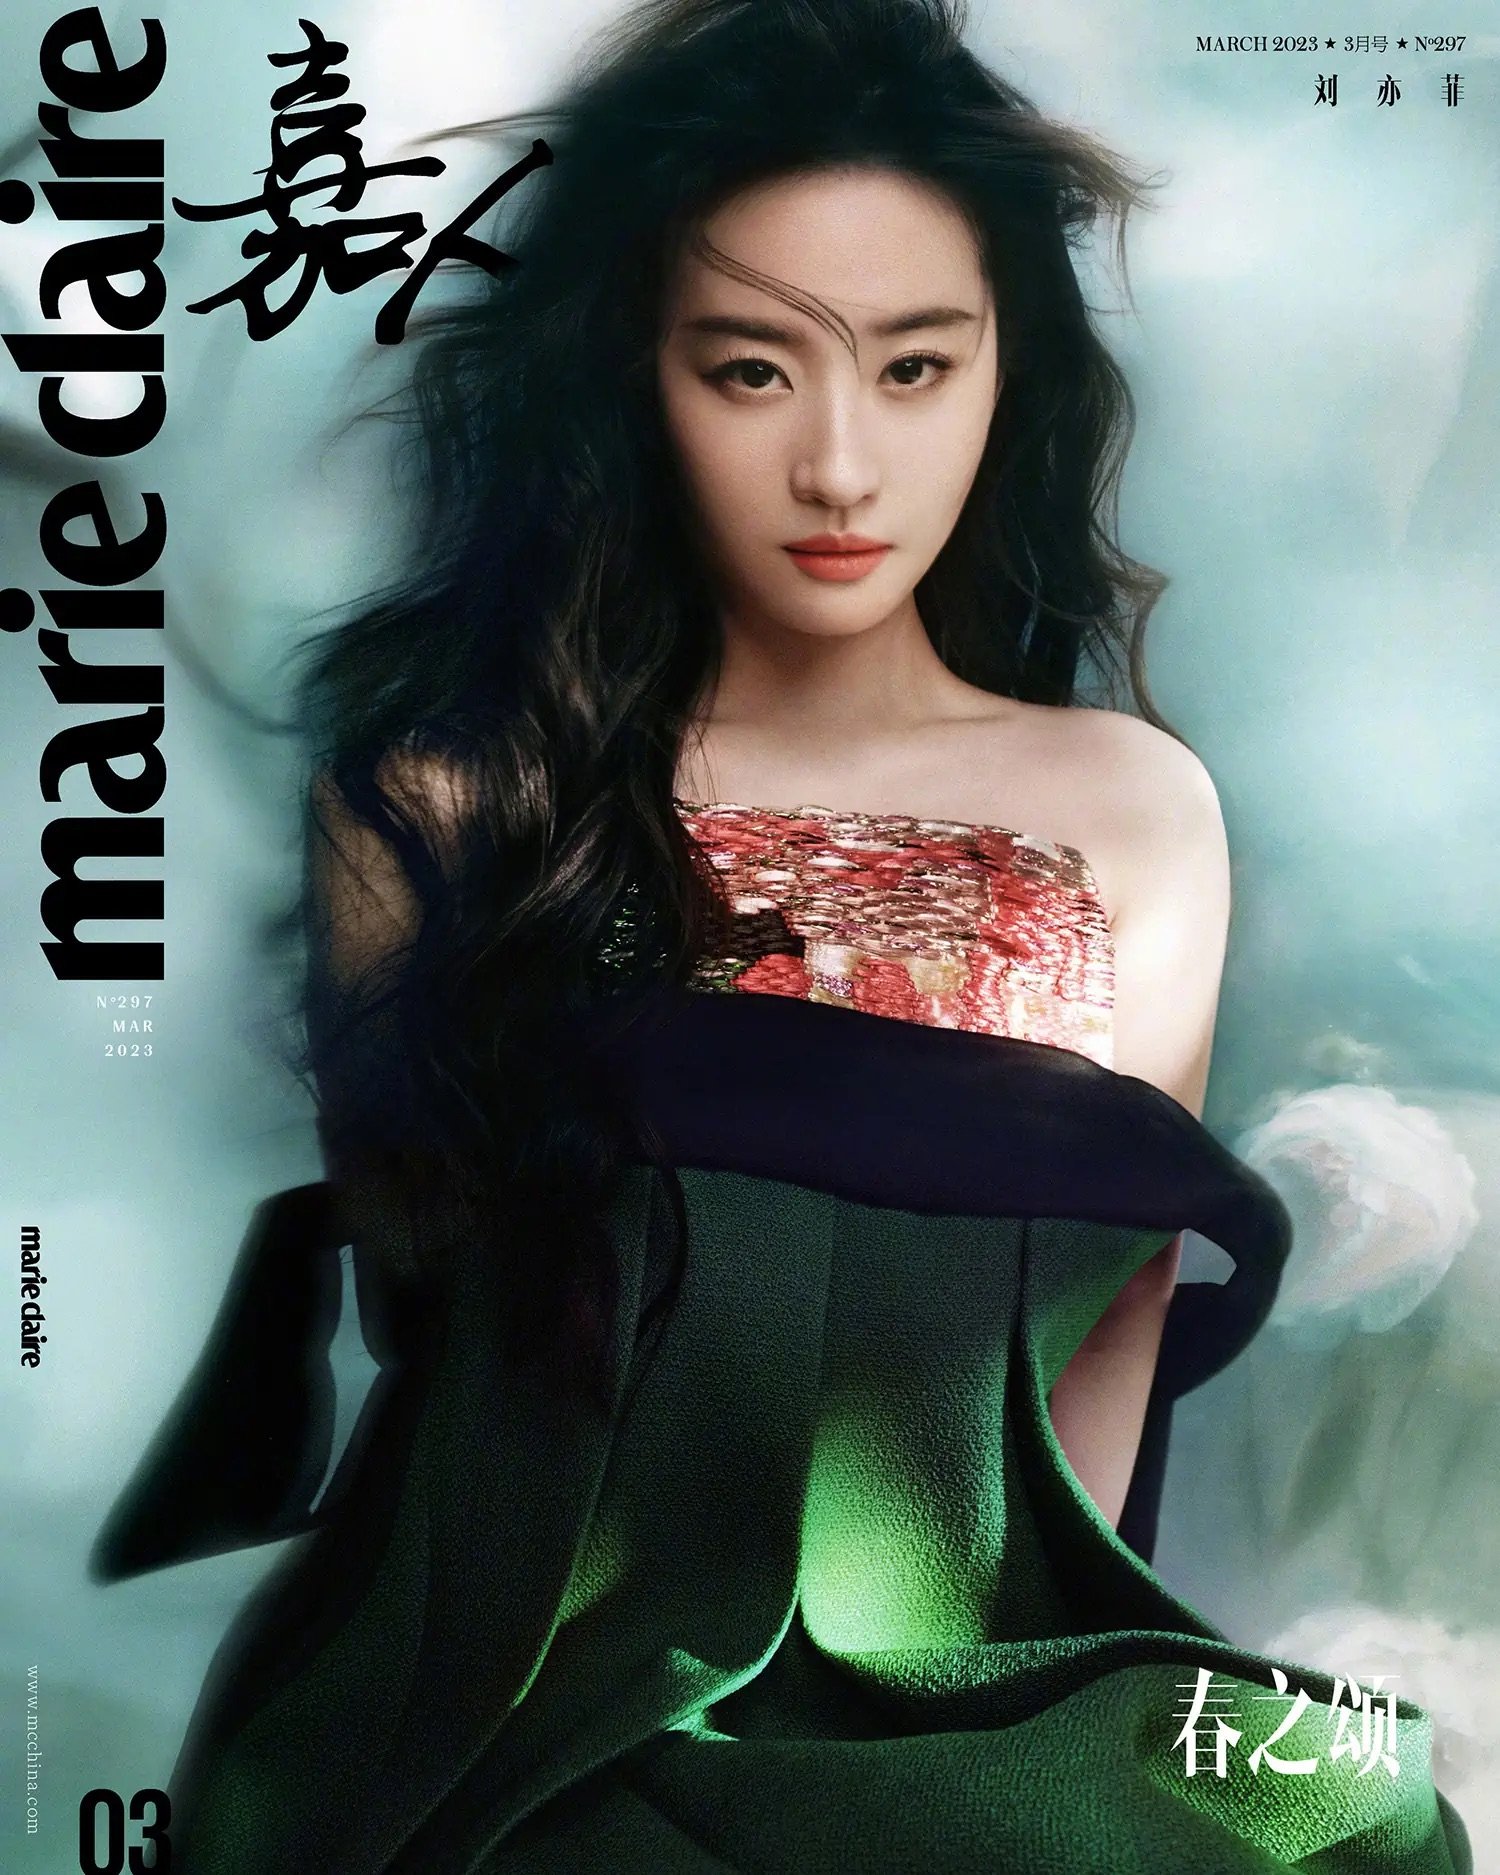 Liu-Yifei-covers-Marie-Claire-China-March-2023-by-Ziqian-Wang-1.jpeg